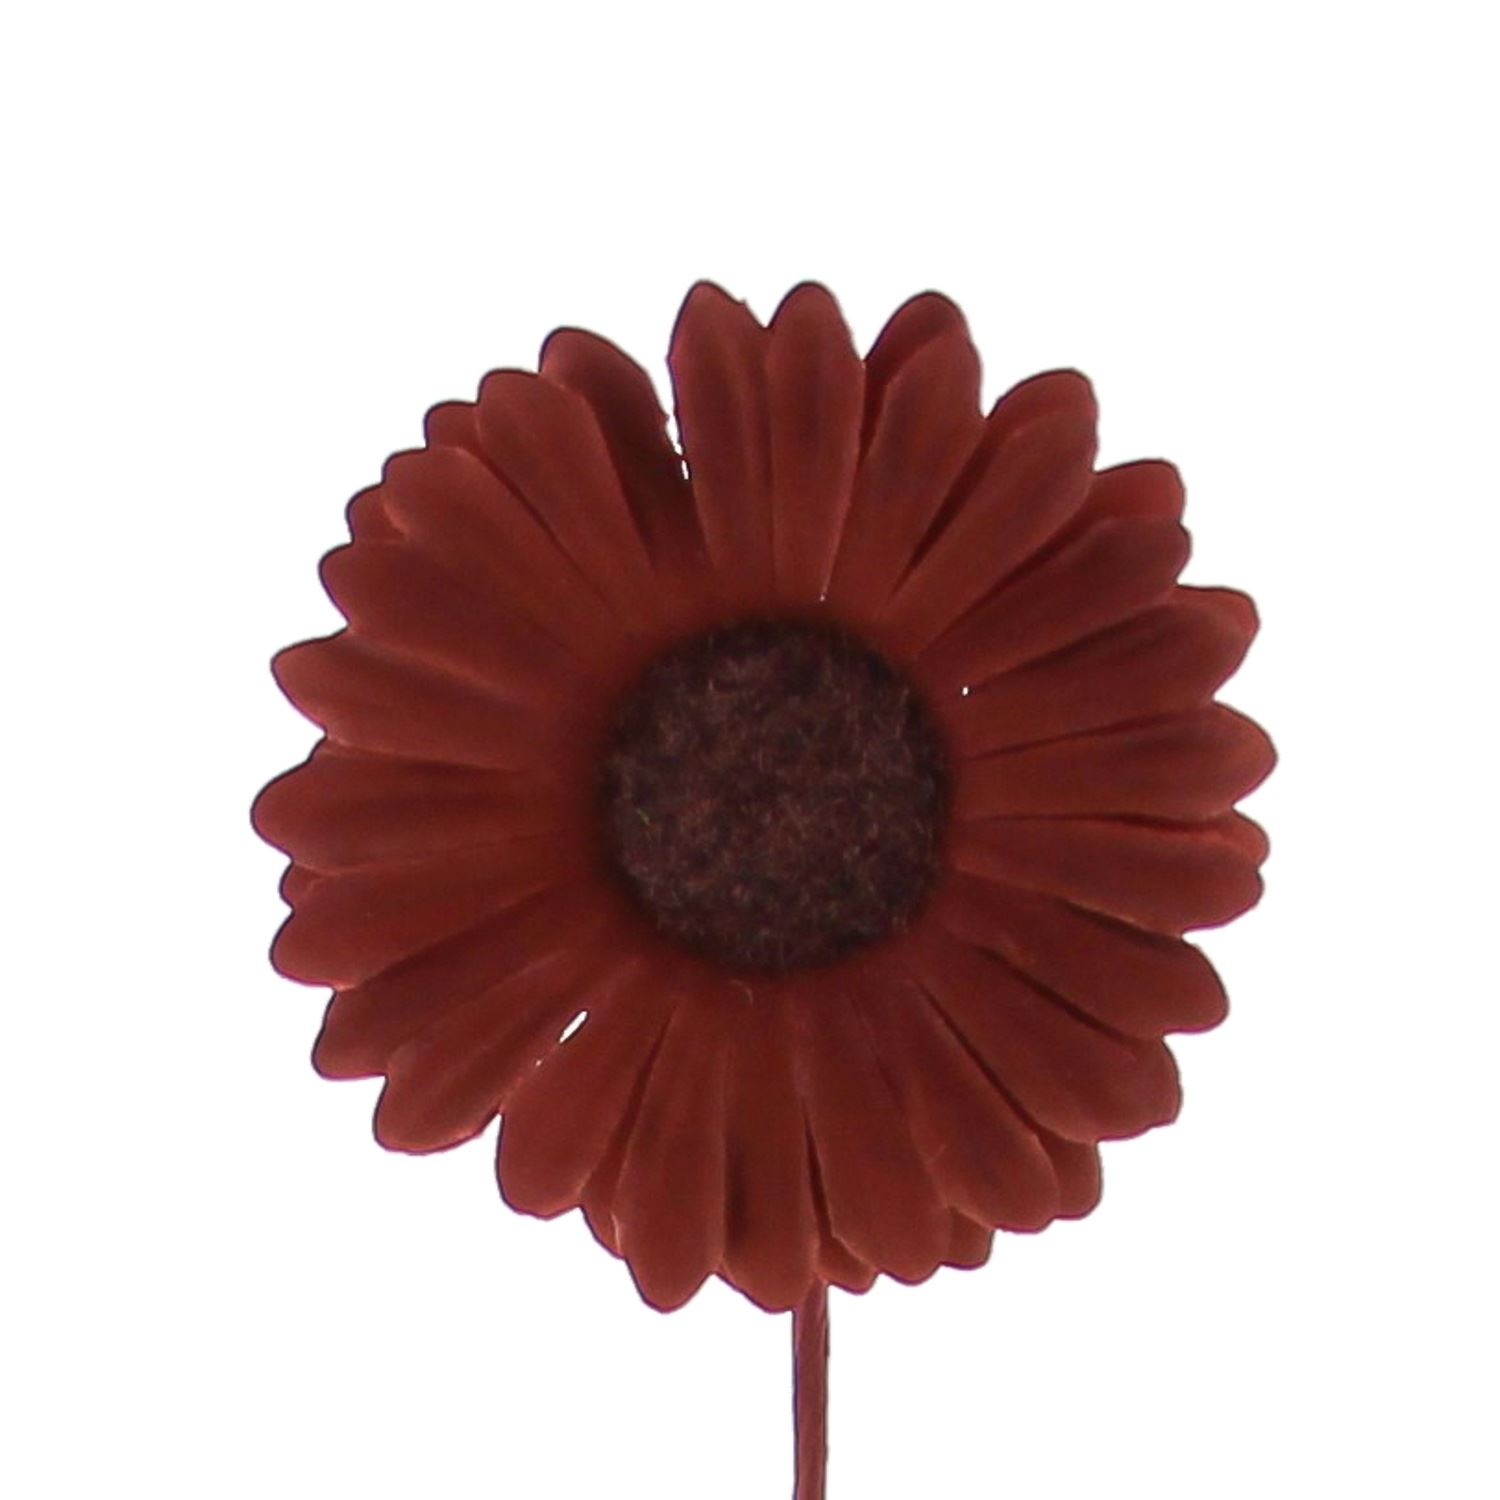 Fleur Germini - 65mm - brown - 96 pièces